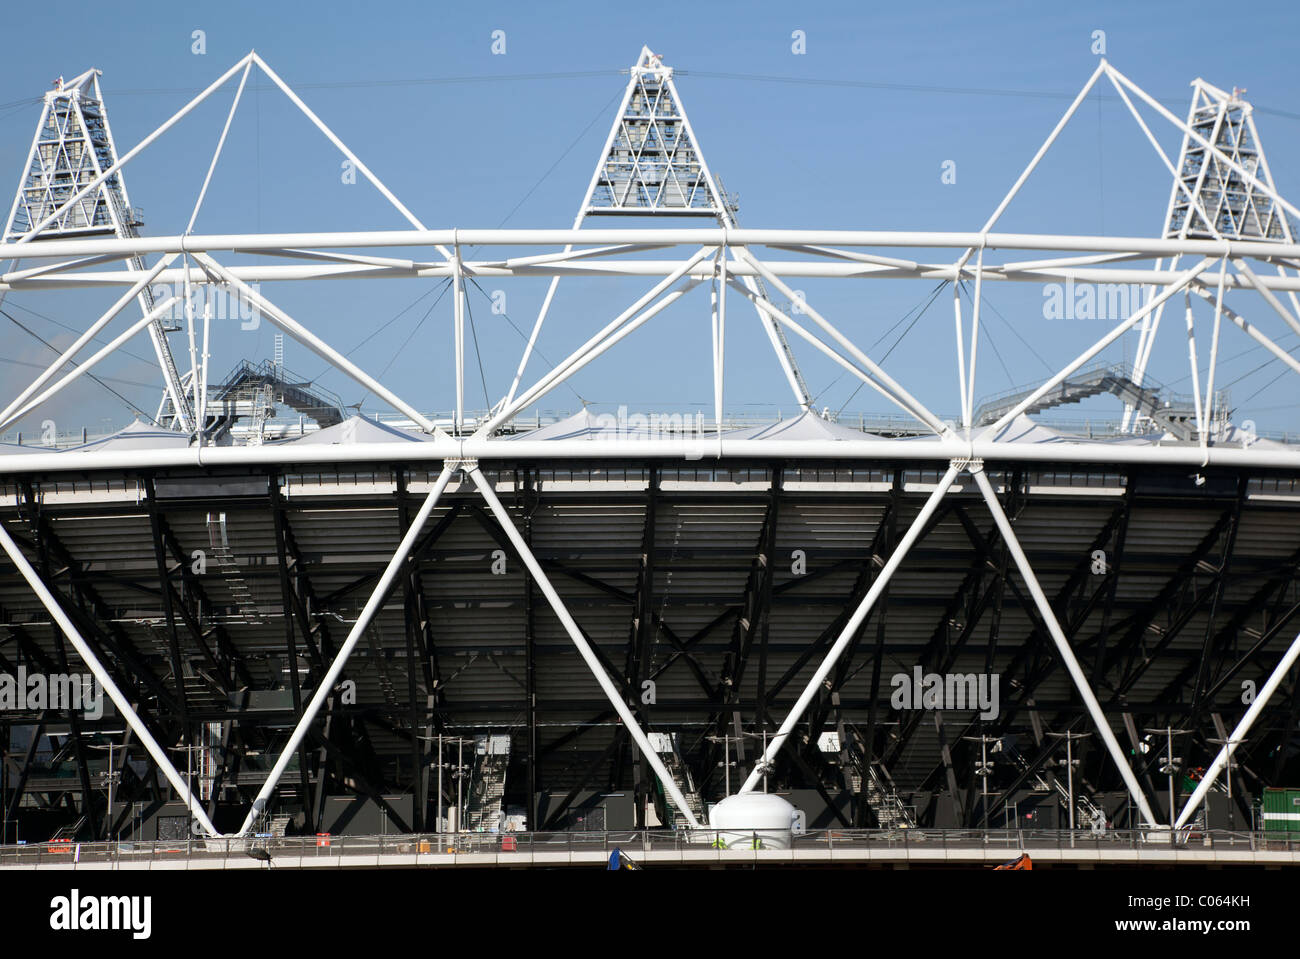 Le stade des Jeux olympiques, Londres (détail) Banque D'Images